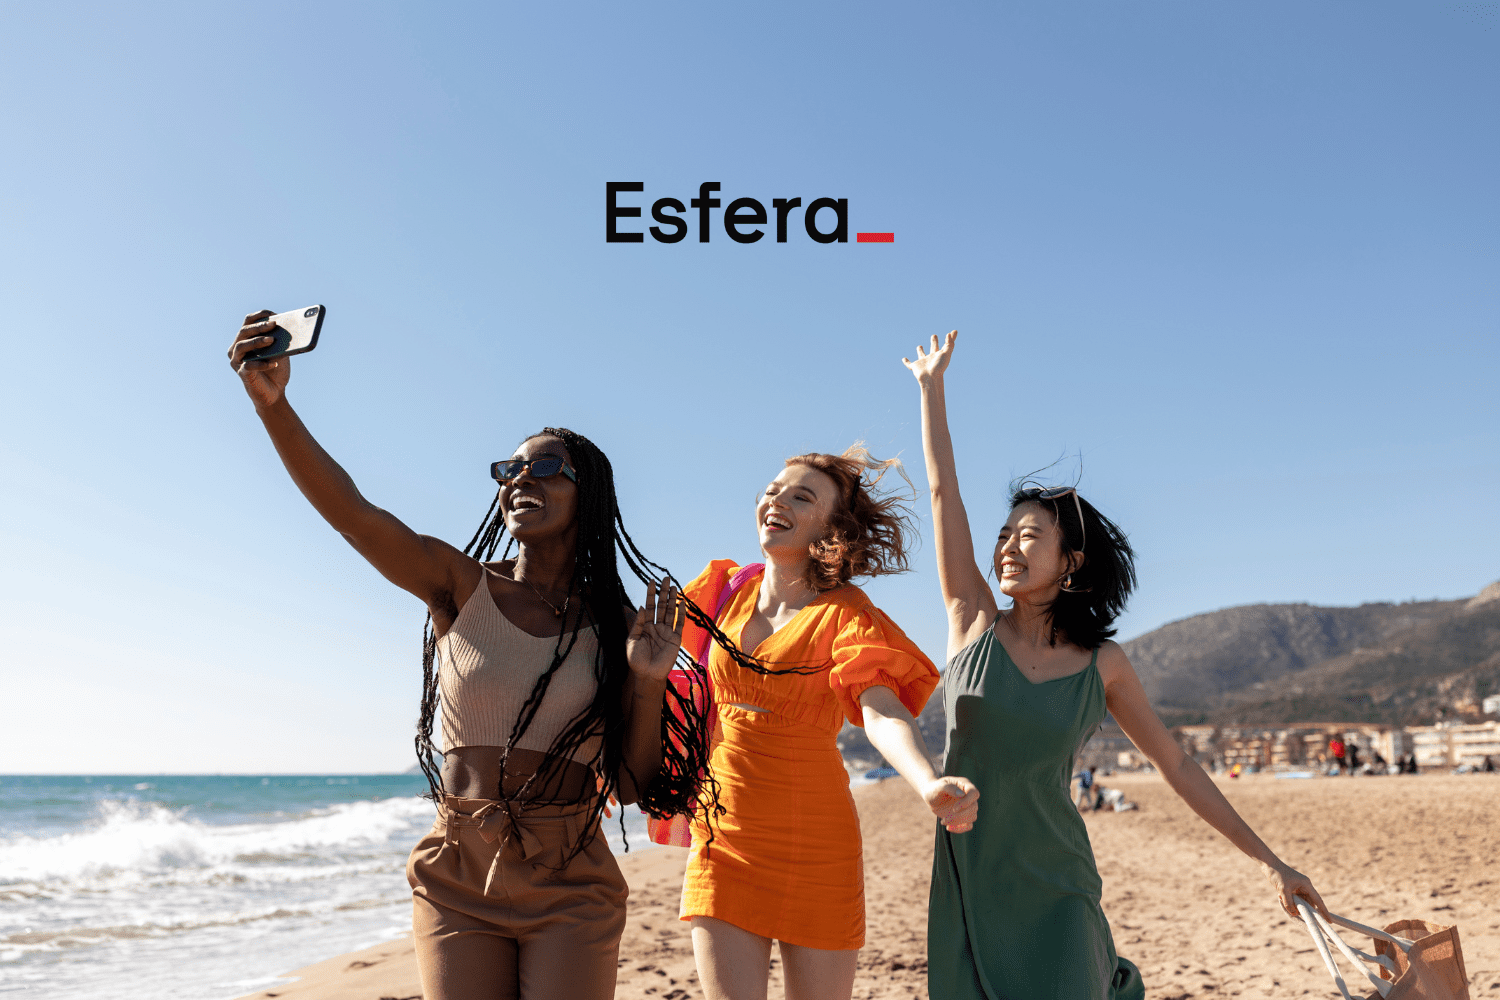 Pontos Esfera 50% OFF. Três mulheres sorrindo e tirando uma selfie em uma praia ensolarada, com o logotipo da Esfera no topo da imagem.